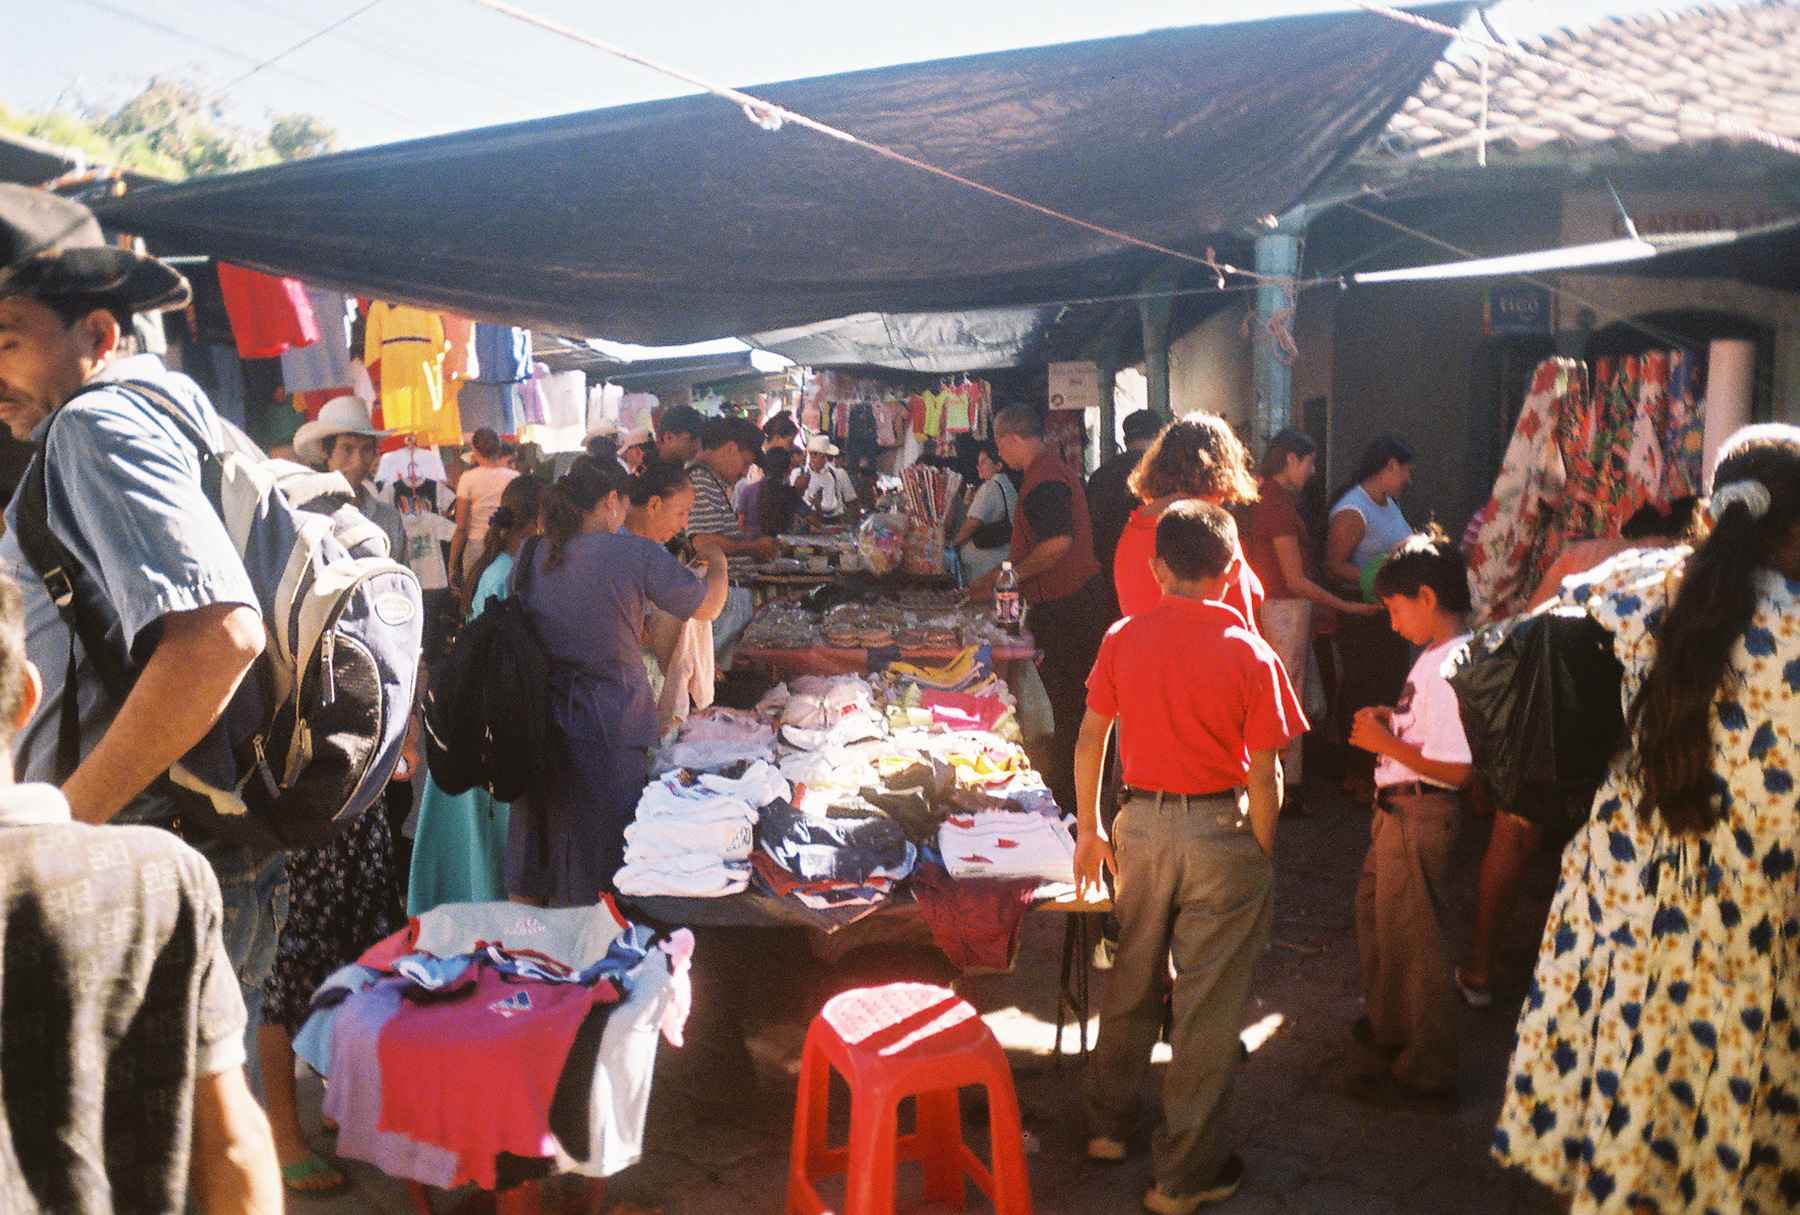 A Market in El Salvador